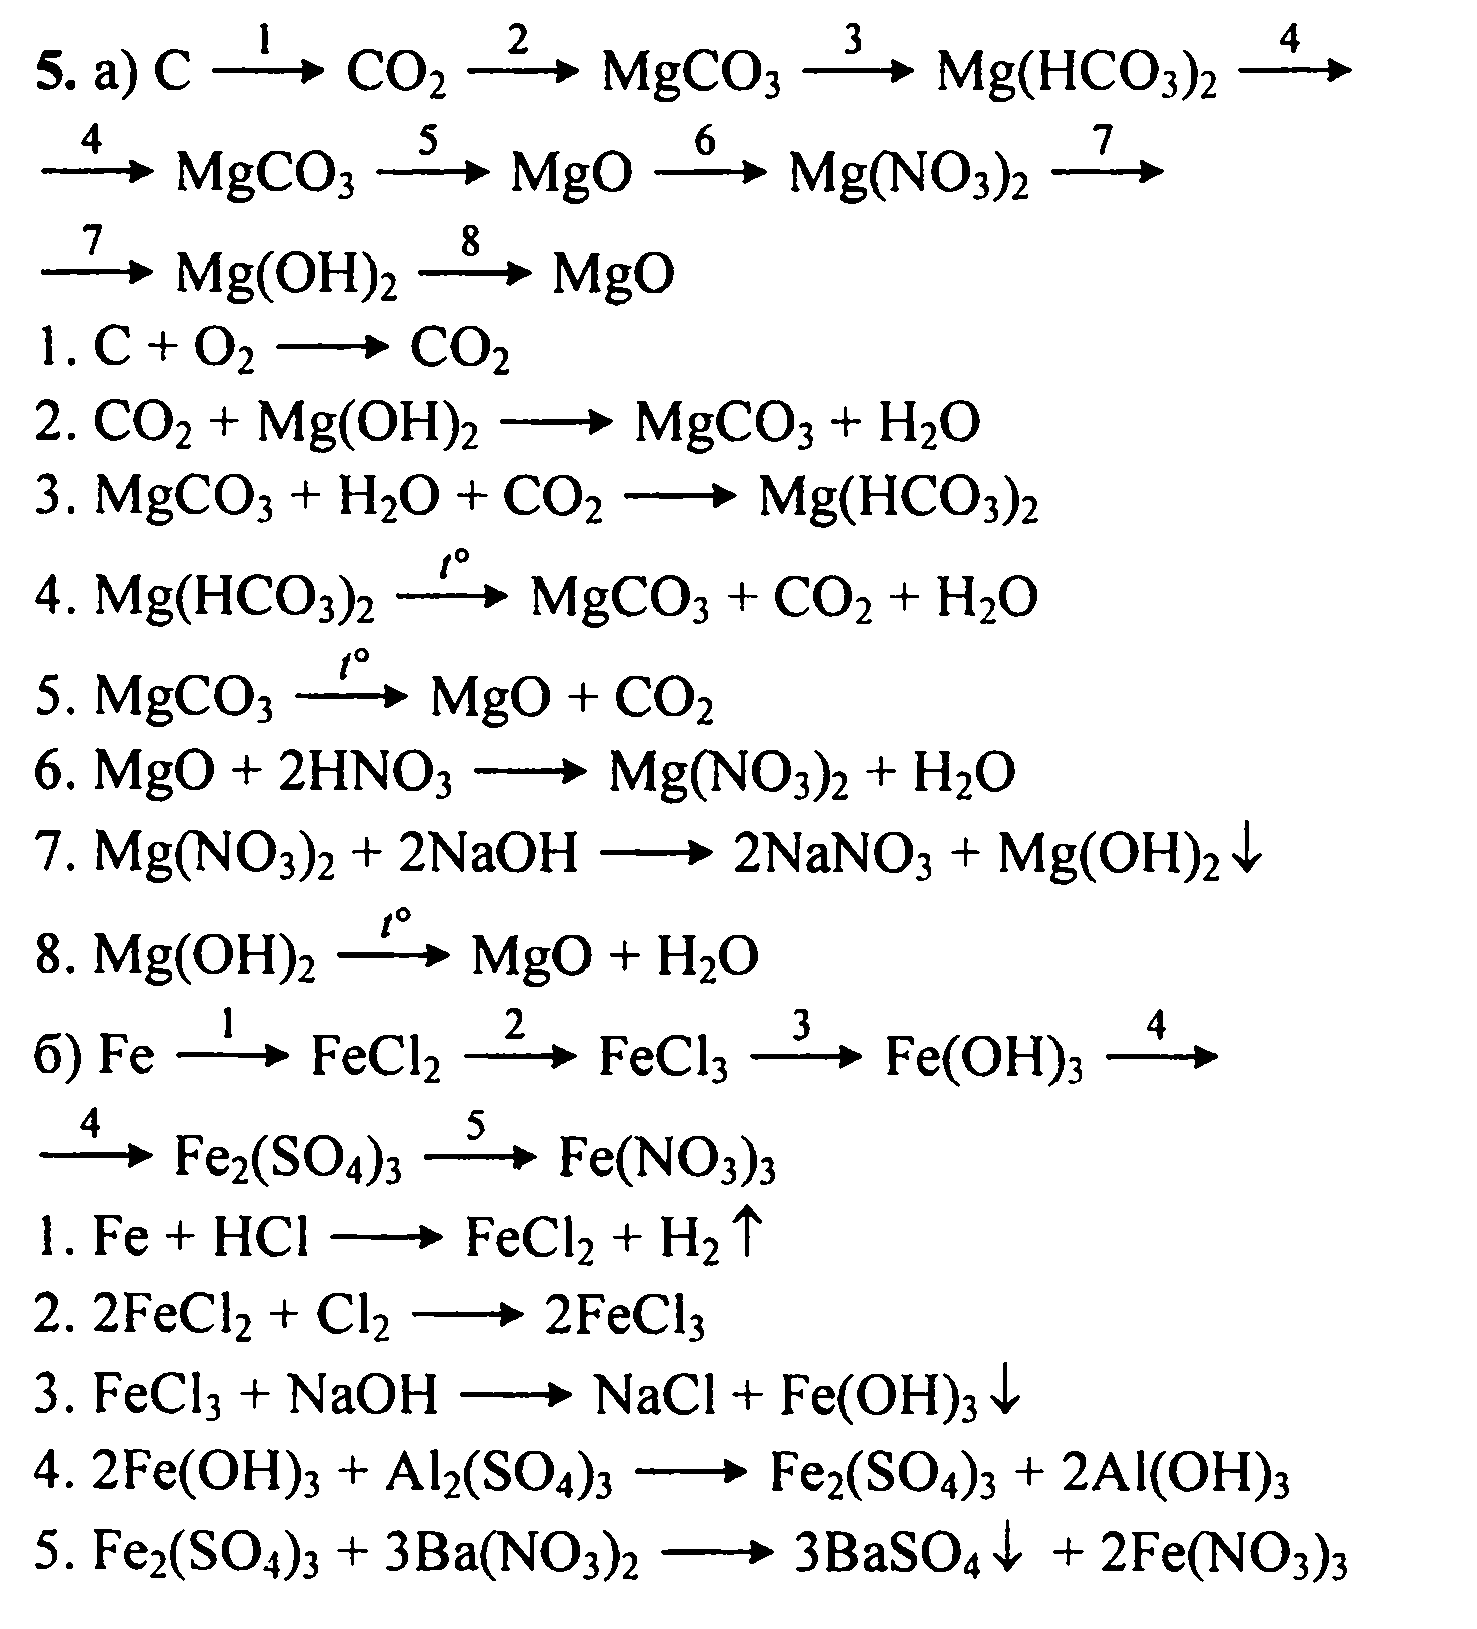 Запишите уравнения реакций с помощью которых можно осуществить превращения согласно схеме s mgs so2